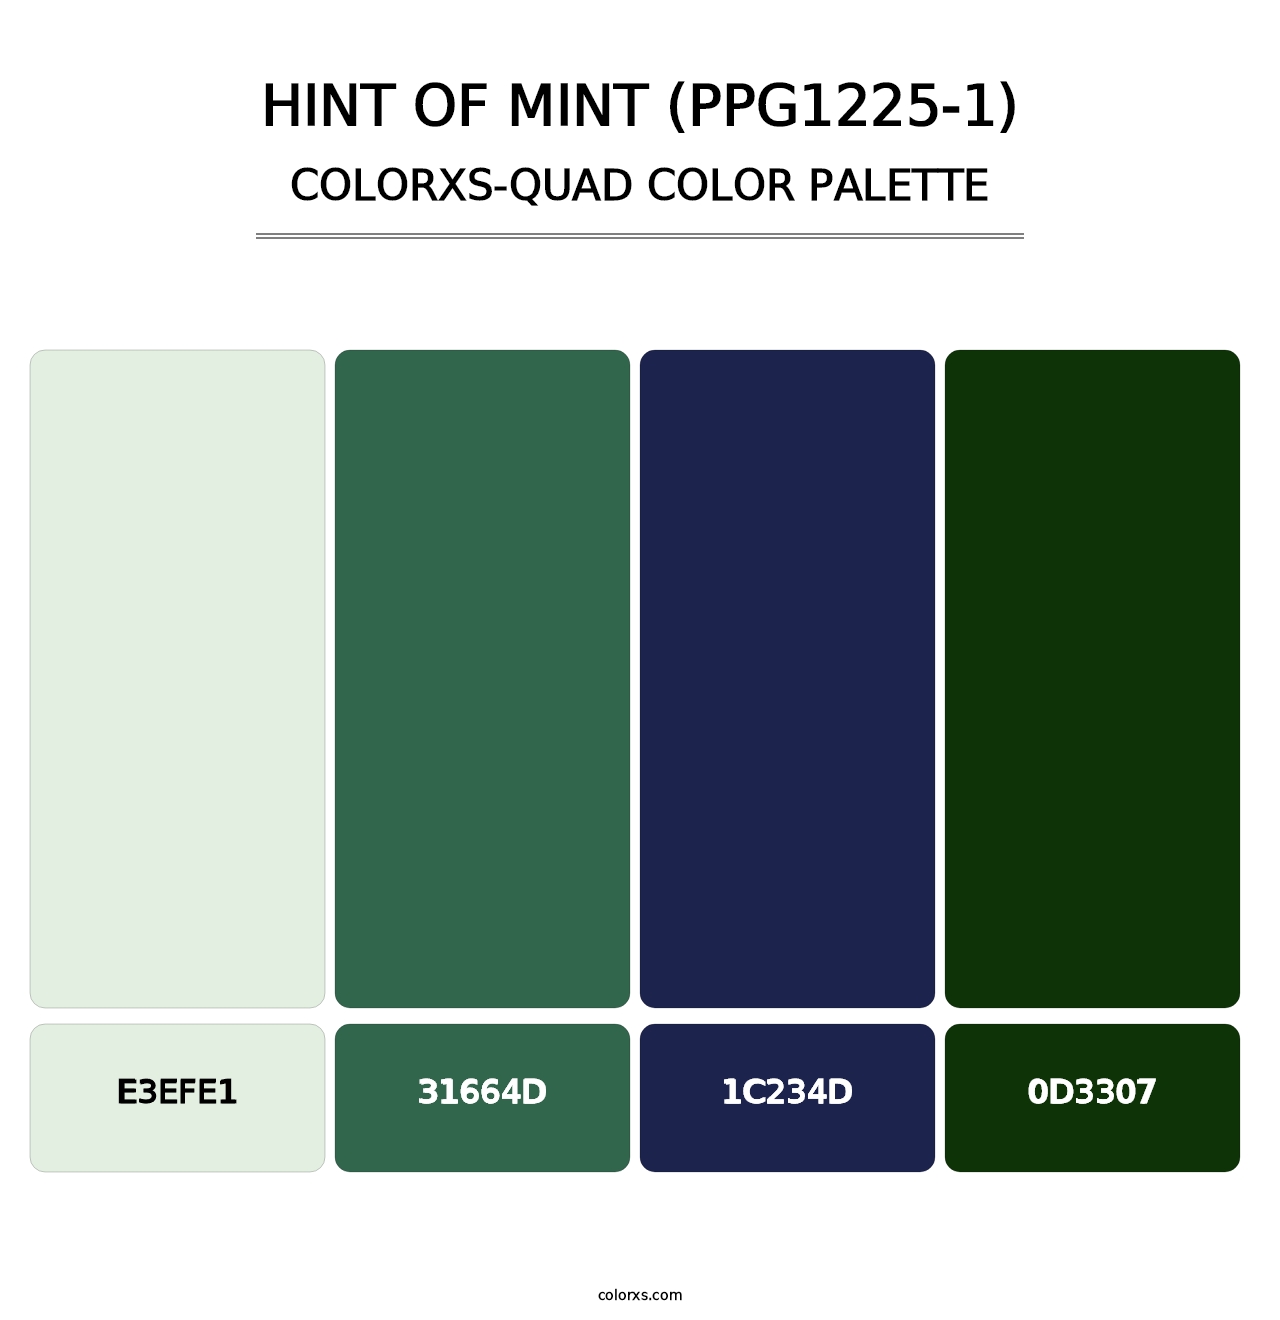 Hint Of Mint (PPG1225-1) - Colorxs Quad Palette